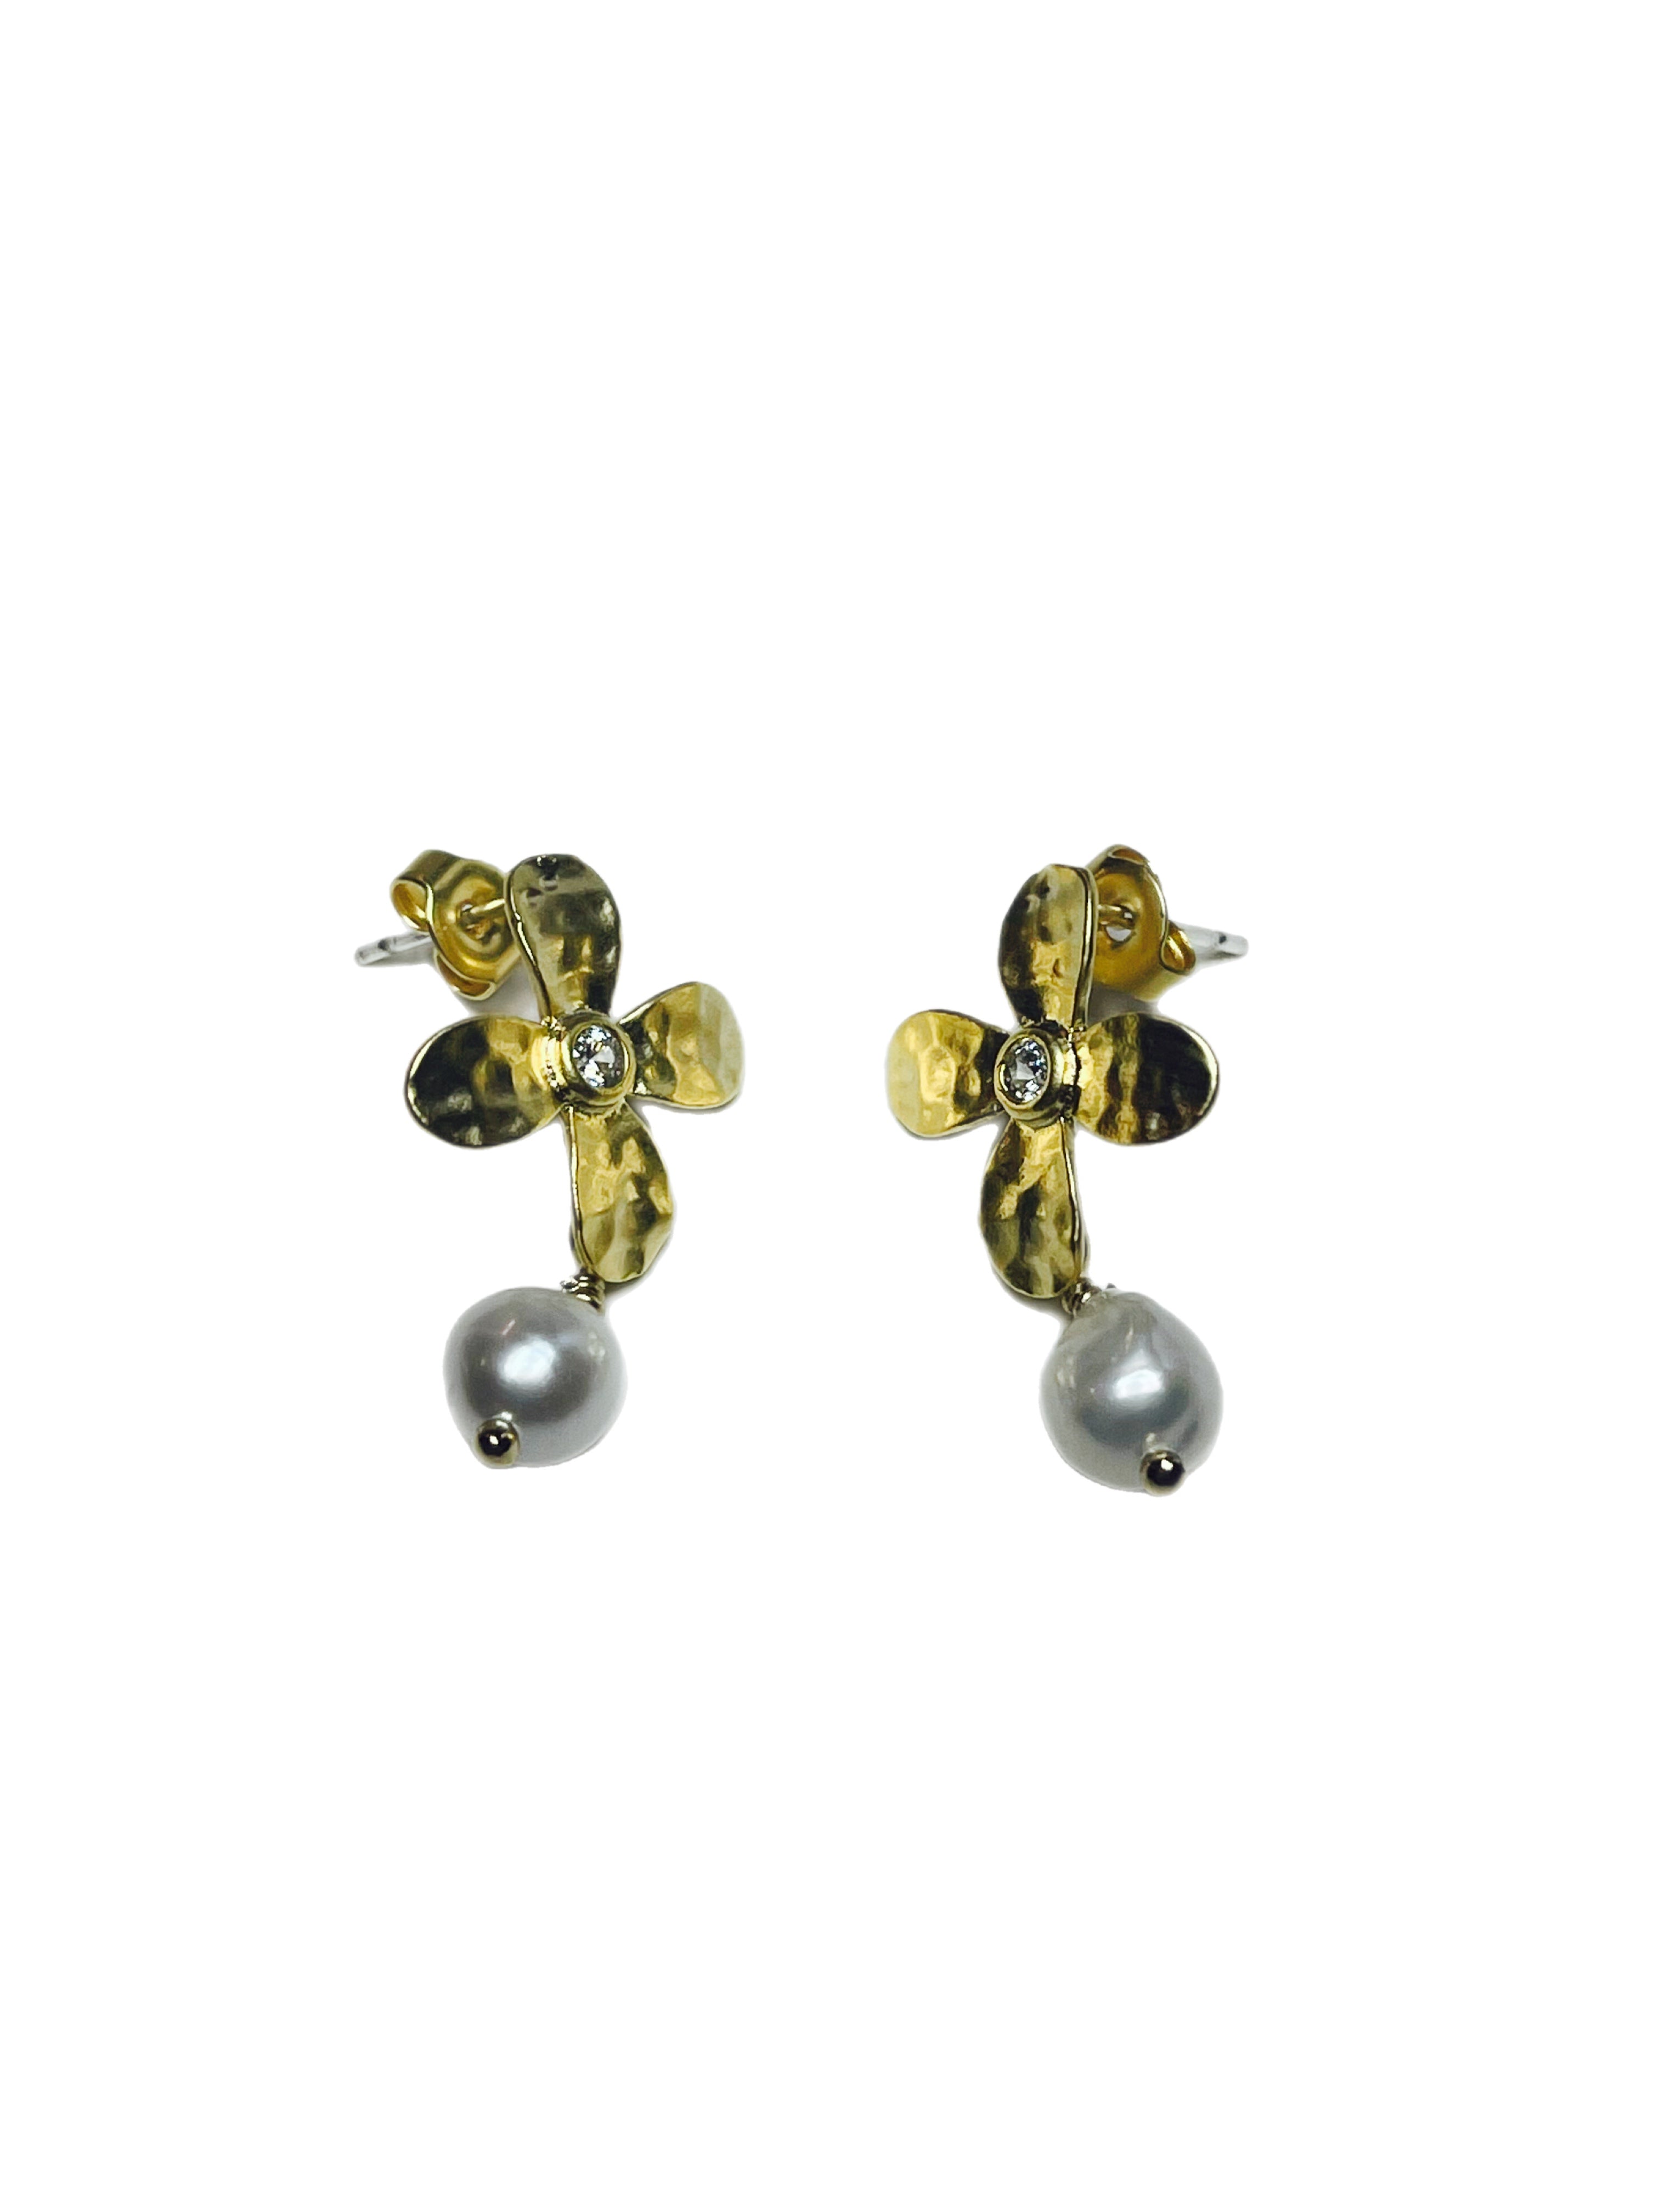 Flower Stud - floral stud earrings with pearl drop